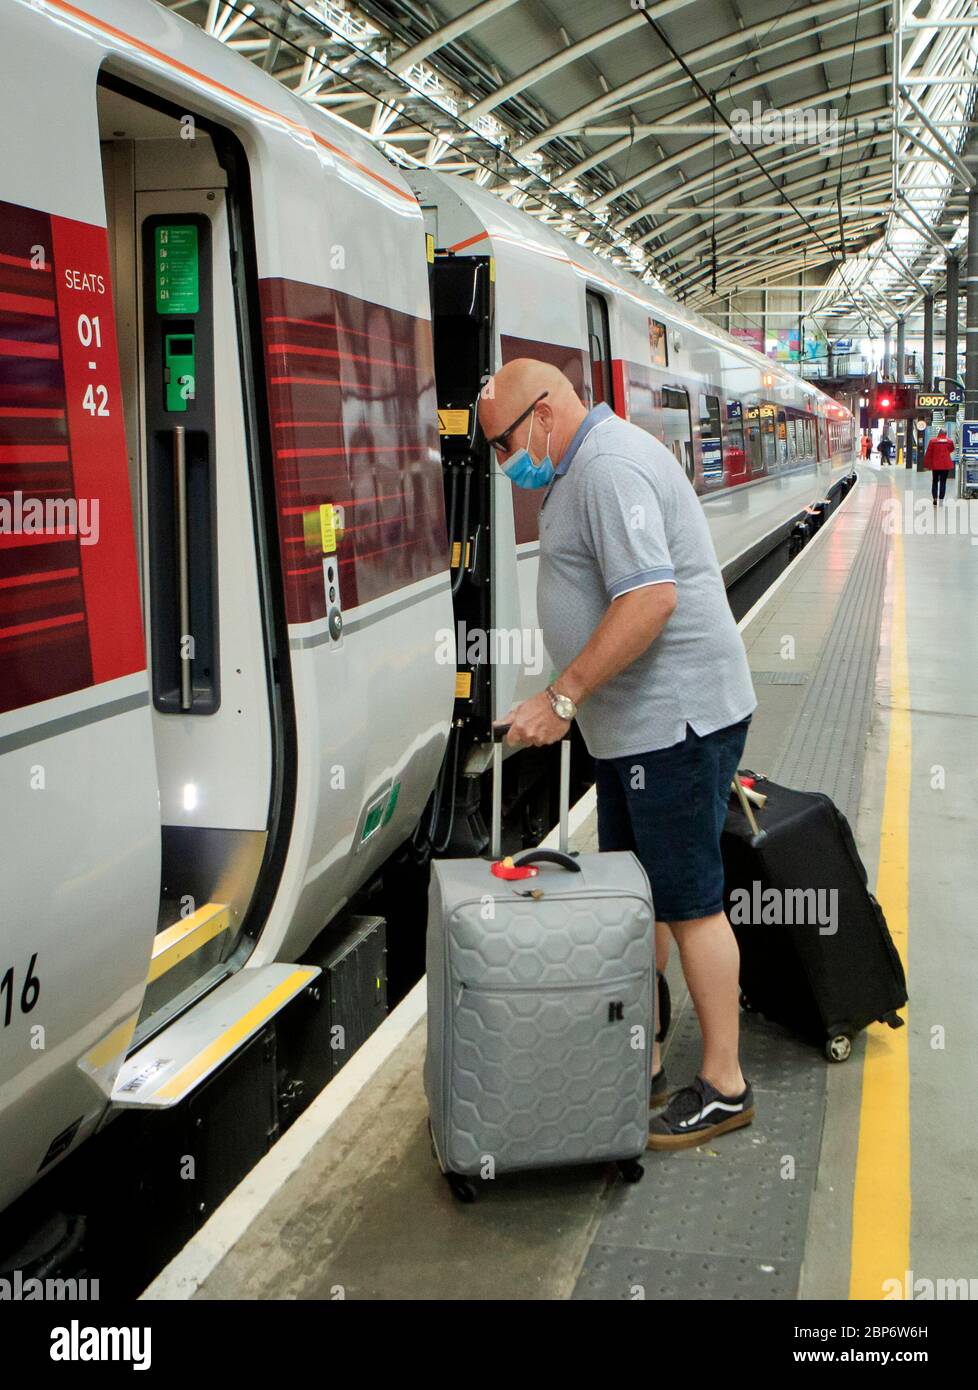 Ein Mann trägt eine Gesichtsmaske am Bahnhof Leeds, da die Zugverbindungen im Zuge der Lockerung der Beschränkungen für die Sperrung des Coronavirus zunehmen. Stockfoto